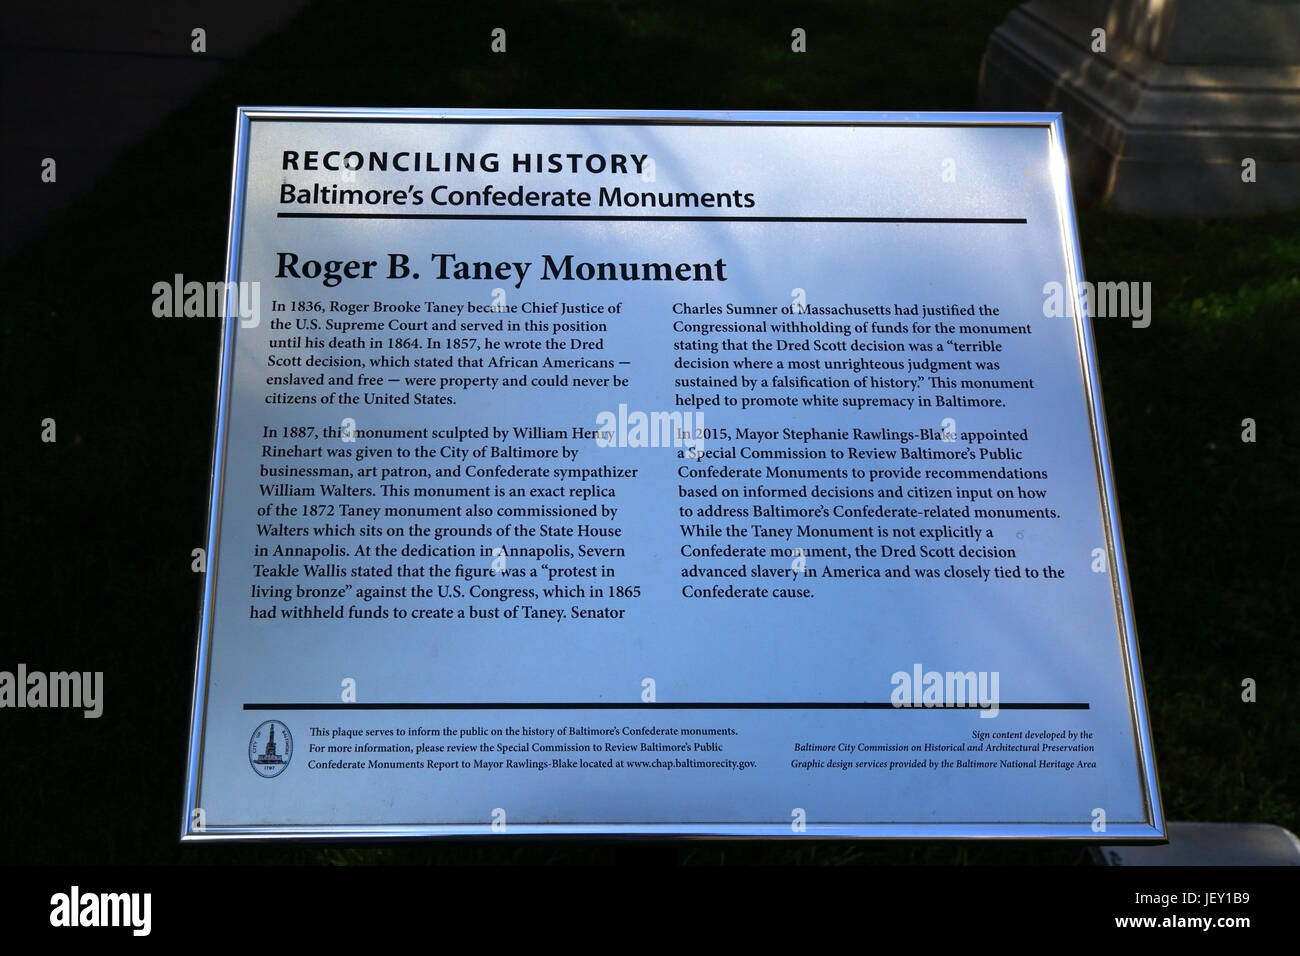 La placa por una comisión para revisar Baltimore Monumentos Confederado junto al monumento a Roger B Taney, Mount Vernon, Baltimore, Maryland, EE.UU. Foto de stock